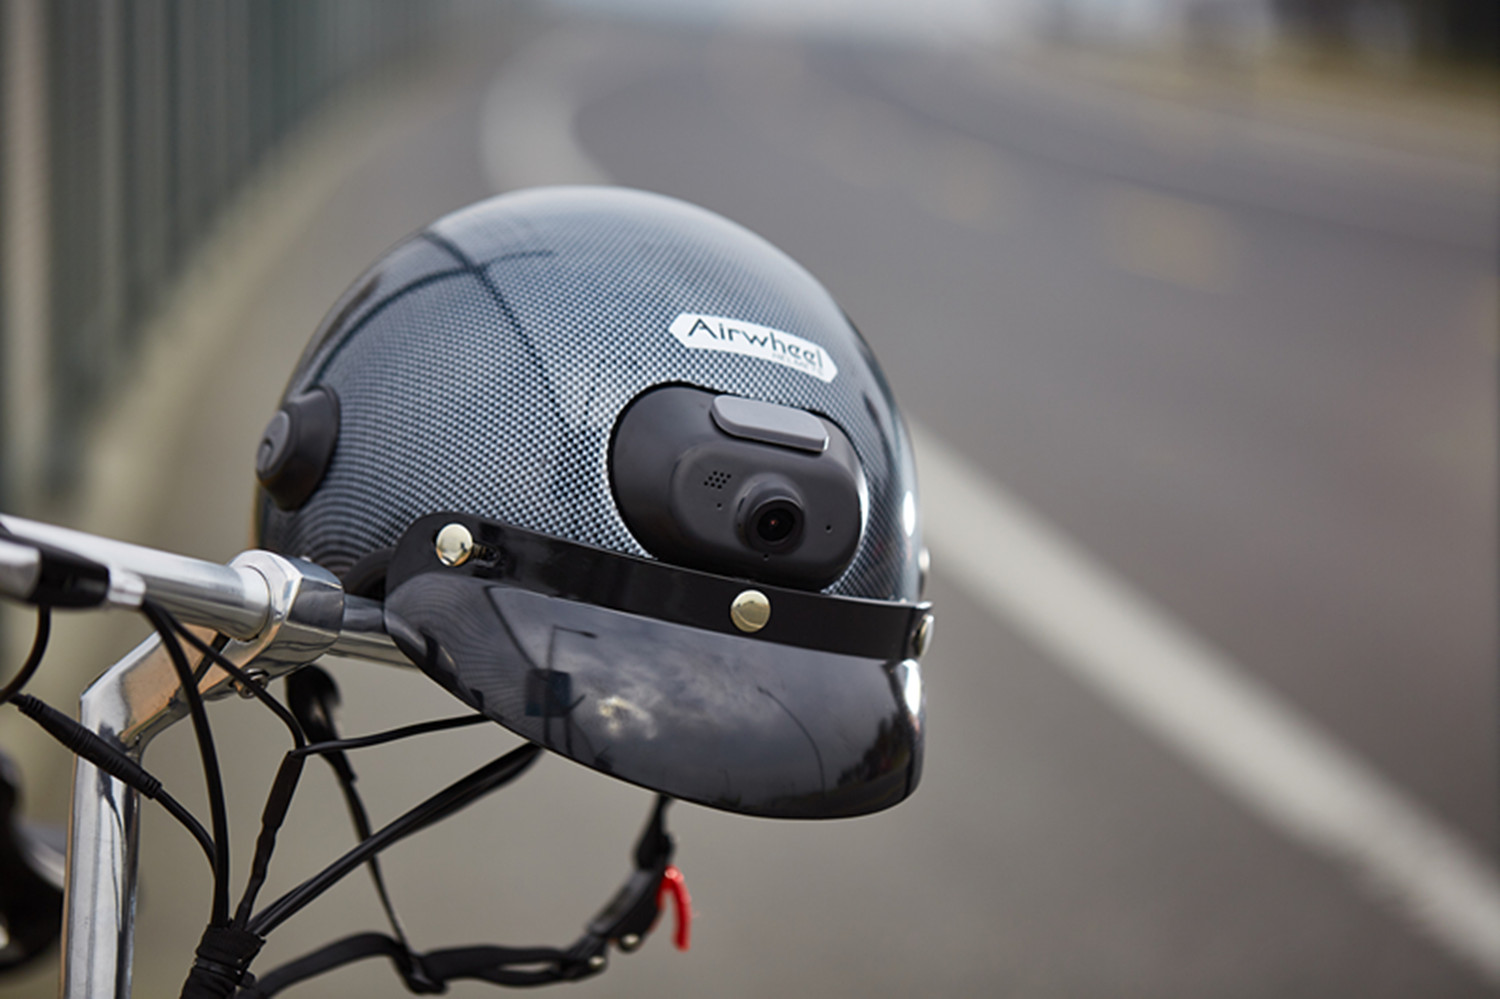 Airwheel C6 motorcycle helmet